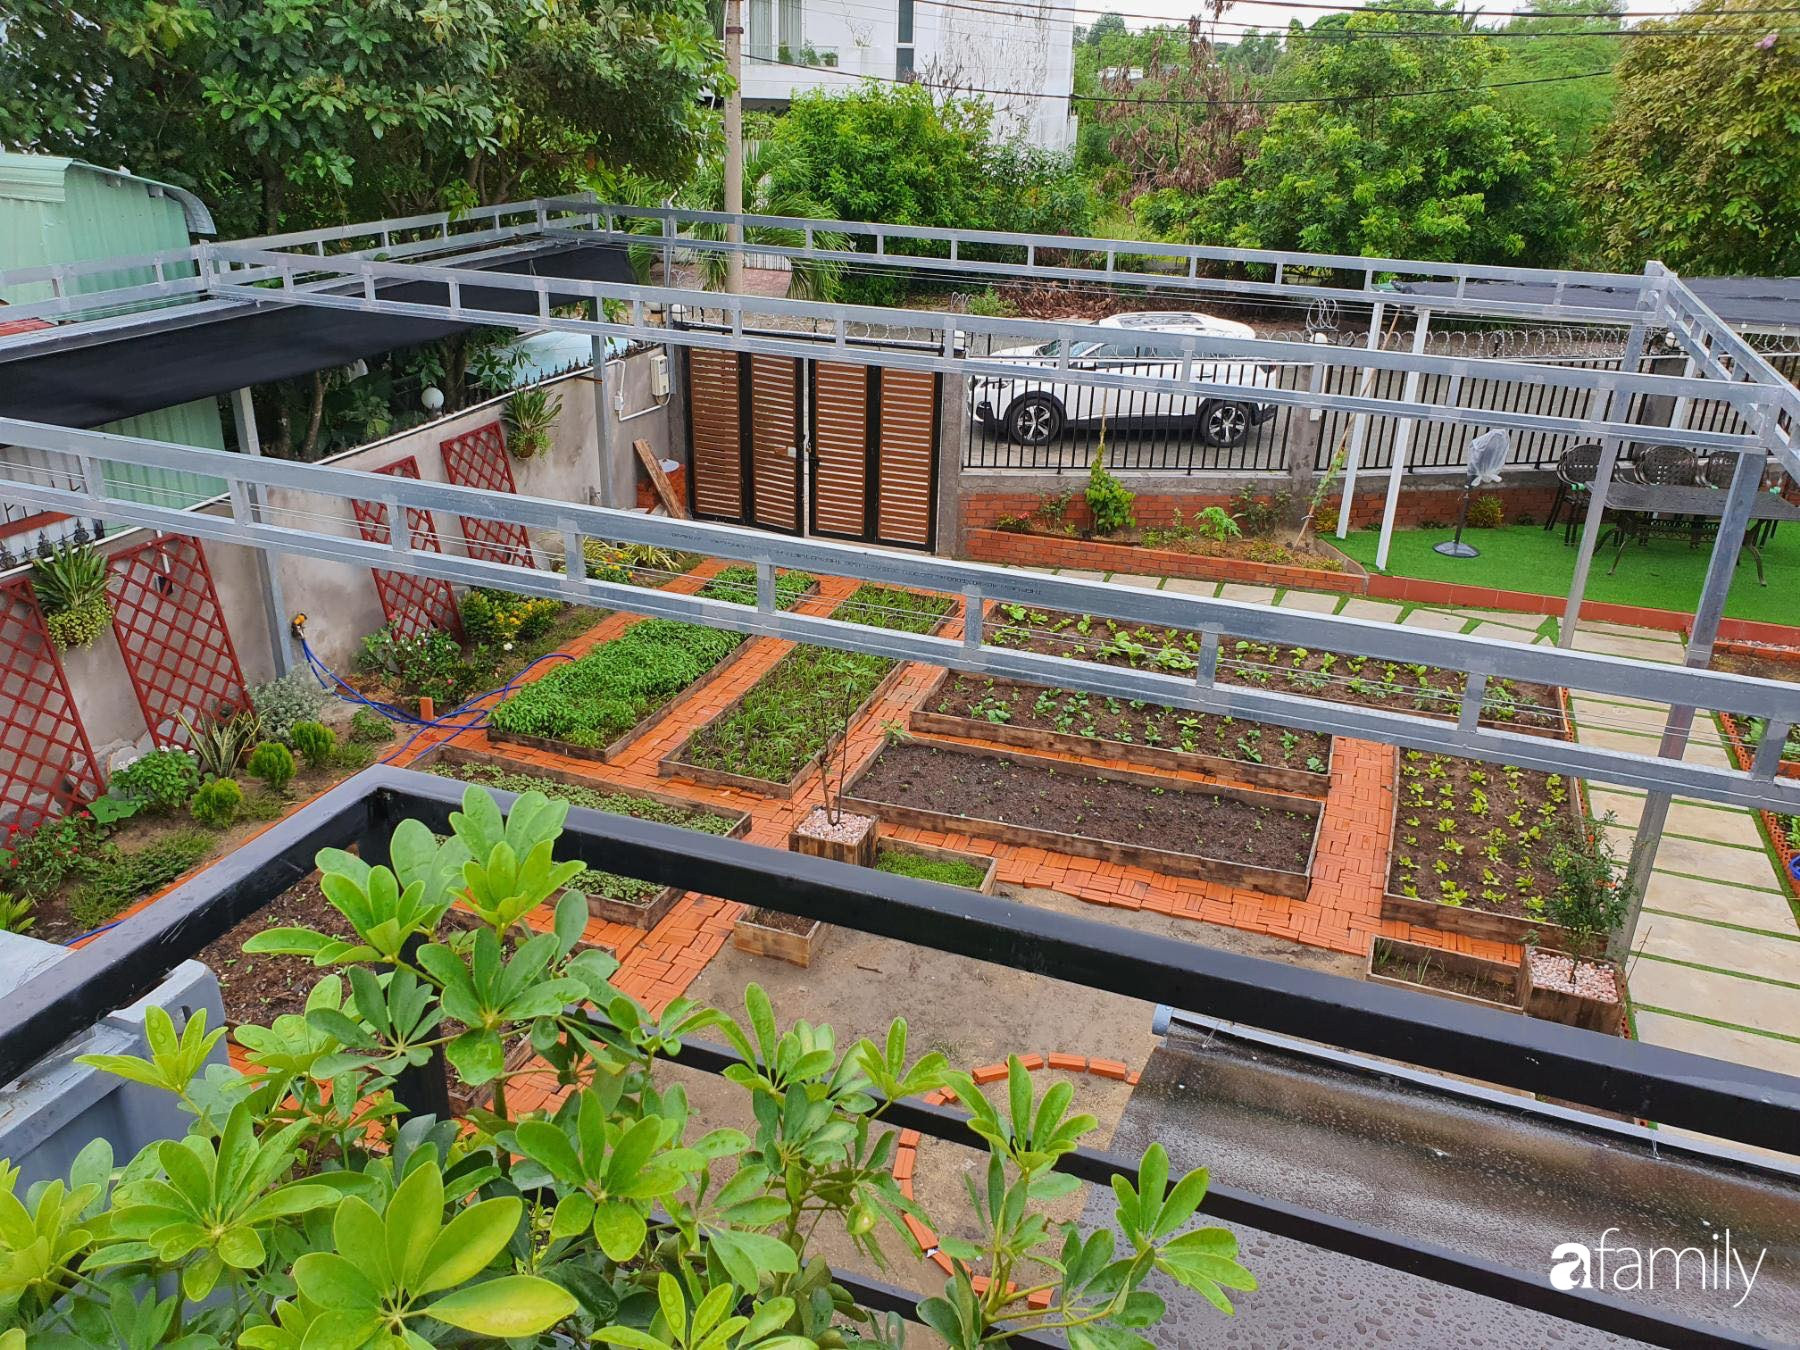 Con gái chi 500 triệu đồng xây nhà vườn container để bố về hưu thỏa mãn đam mê trồng rau ở Sài Gòn - Ảnh 11.